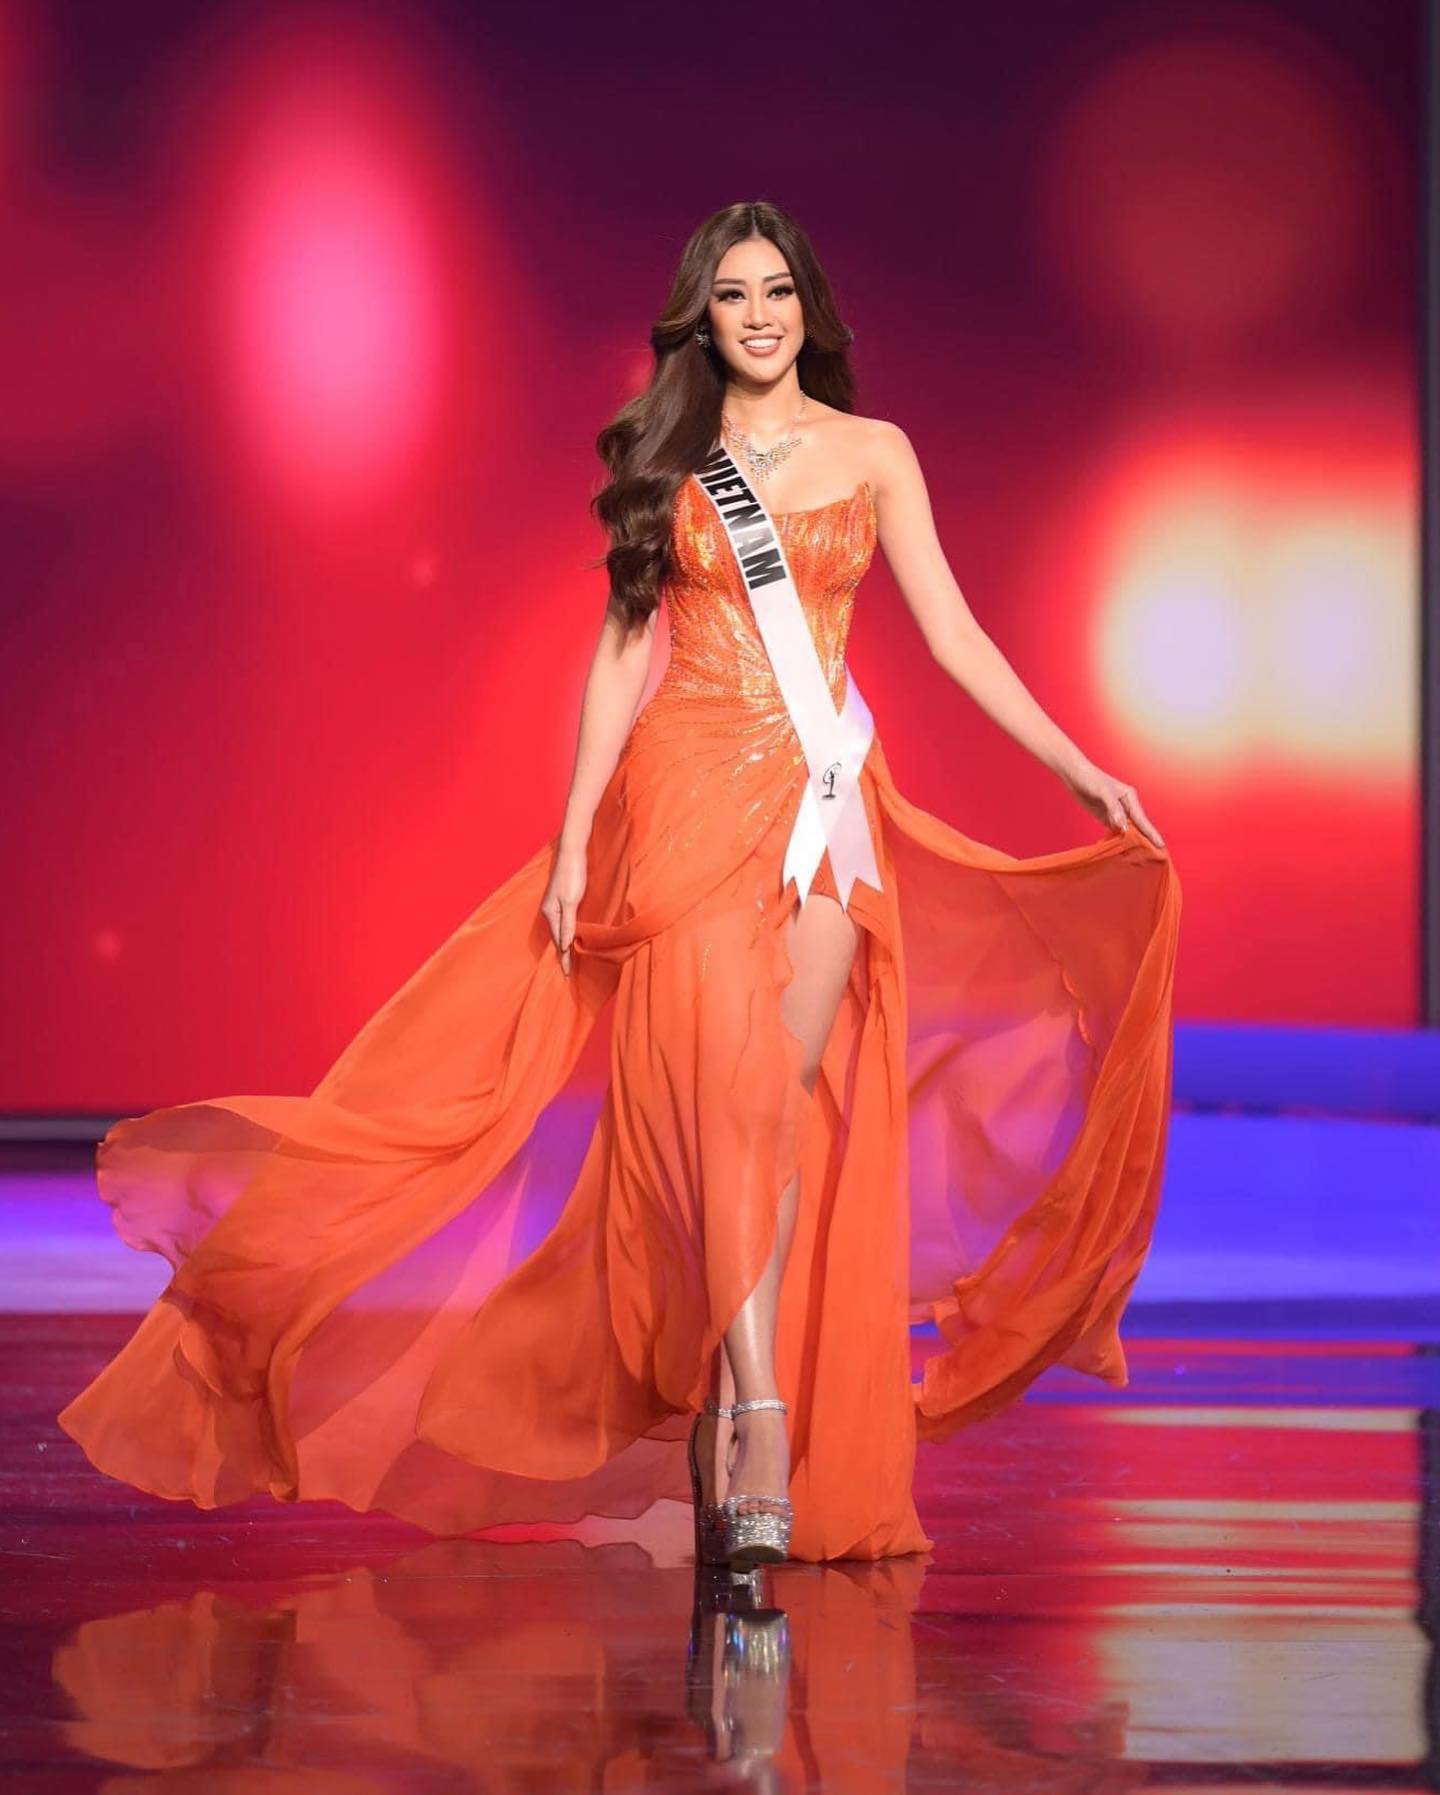 Tại đêm bán kết Miss Universe 2020, thay vì chọn 1 trong 4 chiếc váy đã khánh giả bầu chọn, Vân lại chọn một chiếc váy dạ hội hoàn toàn khác lạ.